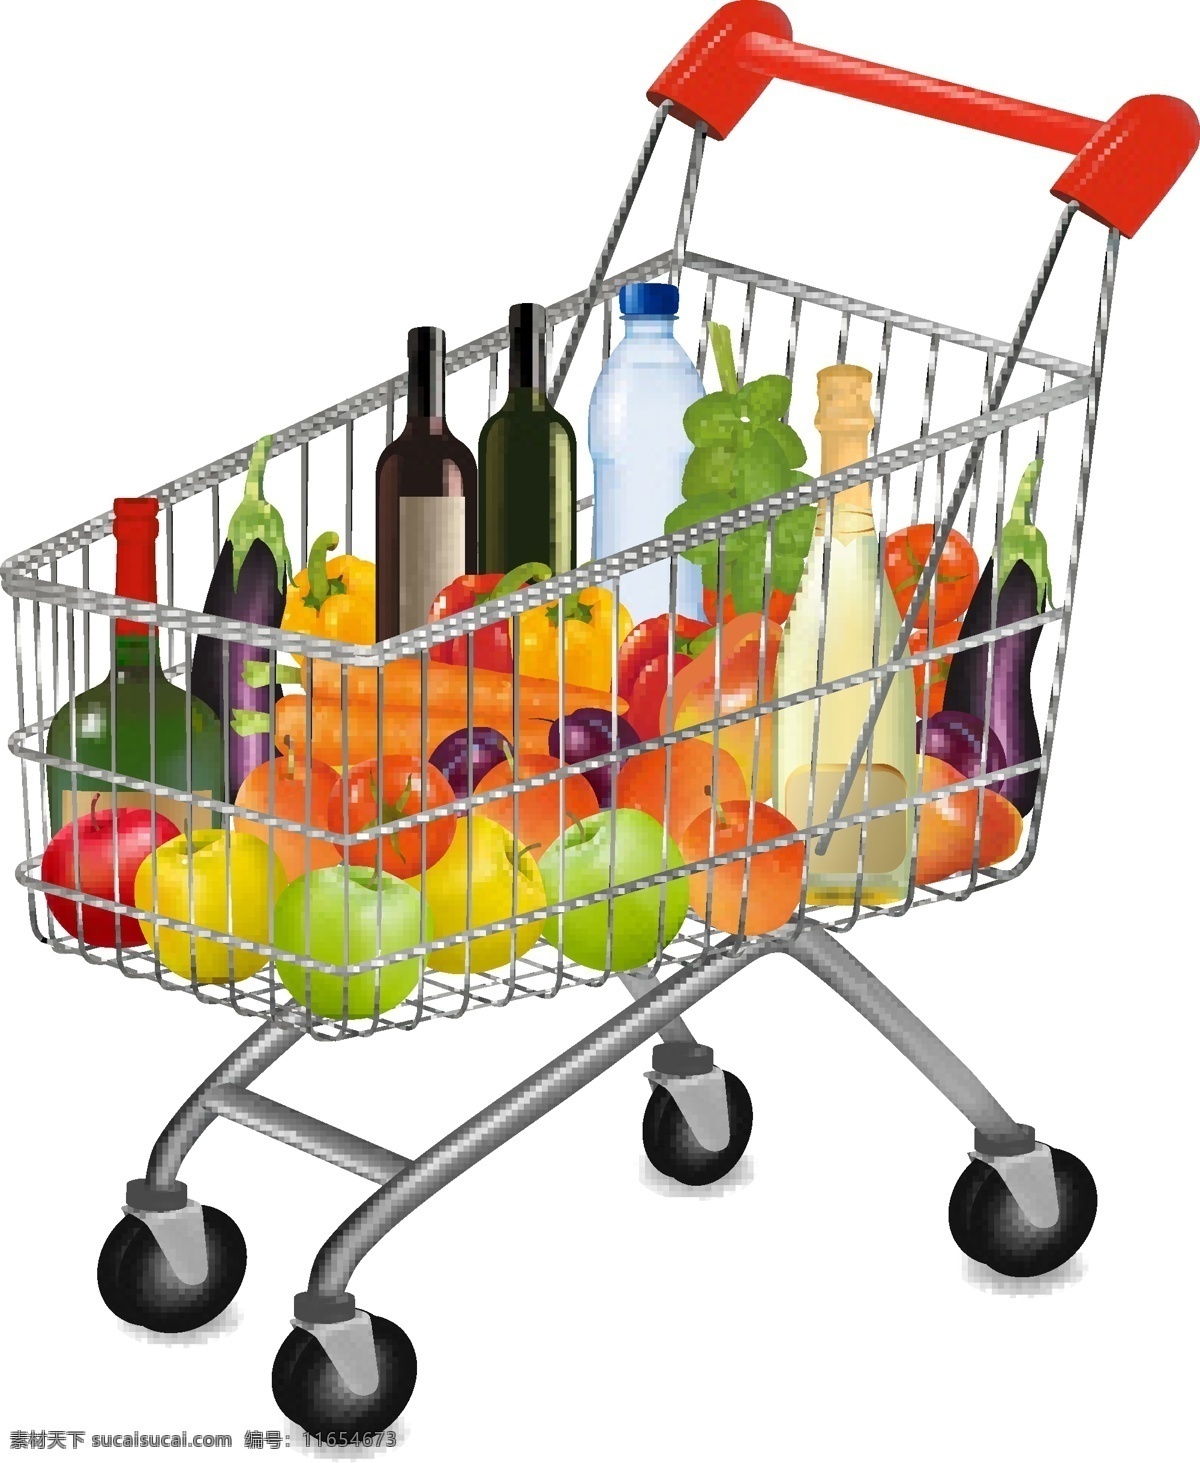 生鲜 超市 商品 购物车 矢量 面包 生鲜超市 手推车 蔬菜 水果 商品购物车 相关 矢量图